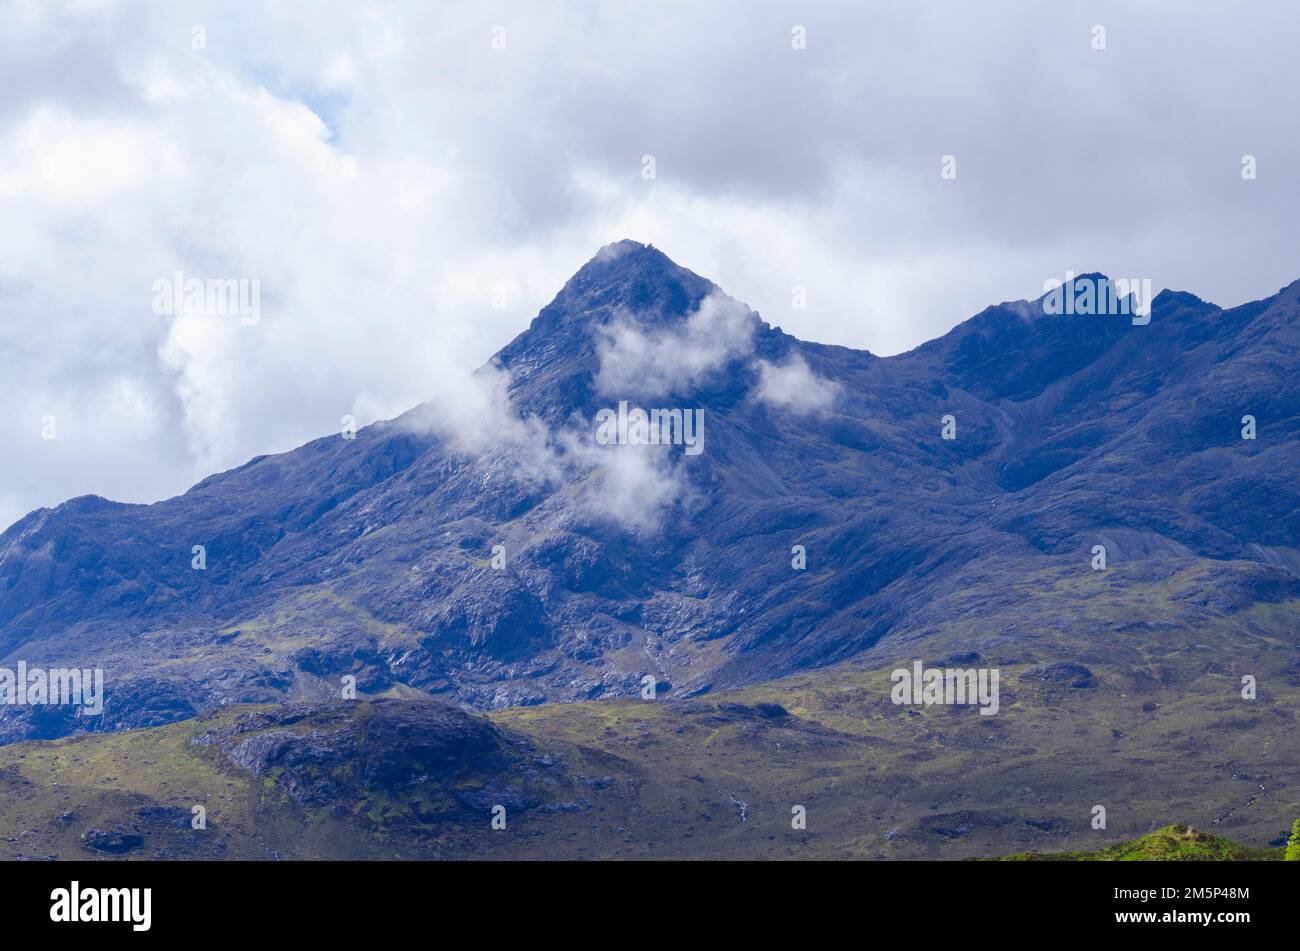 Le cime di Sgurr nan Gillean (965m, centro), Am Basteir (935m) e Basteir Tooth (915m) nel Cuillen (Cullin) sull'isola di Skye, Scozia, Regno Unito Foto Stock